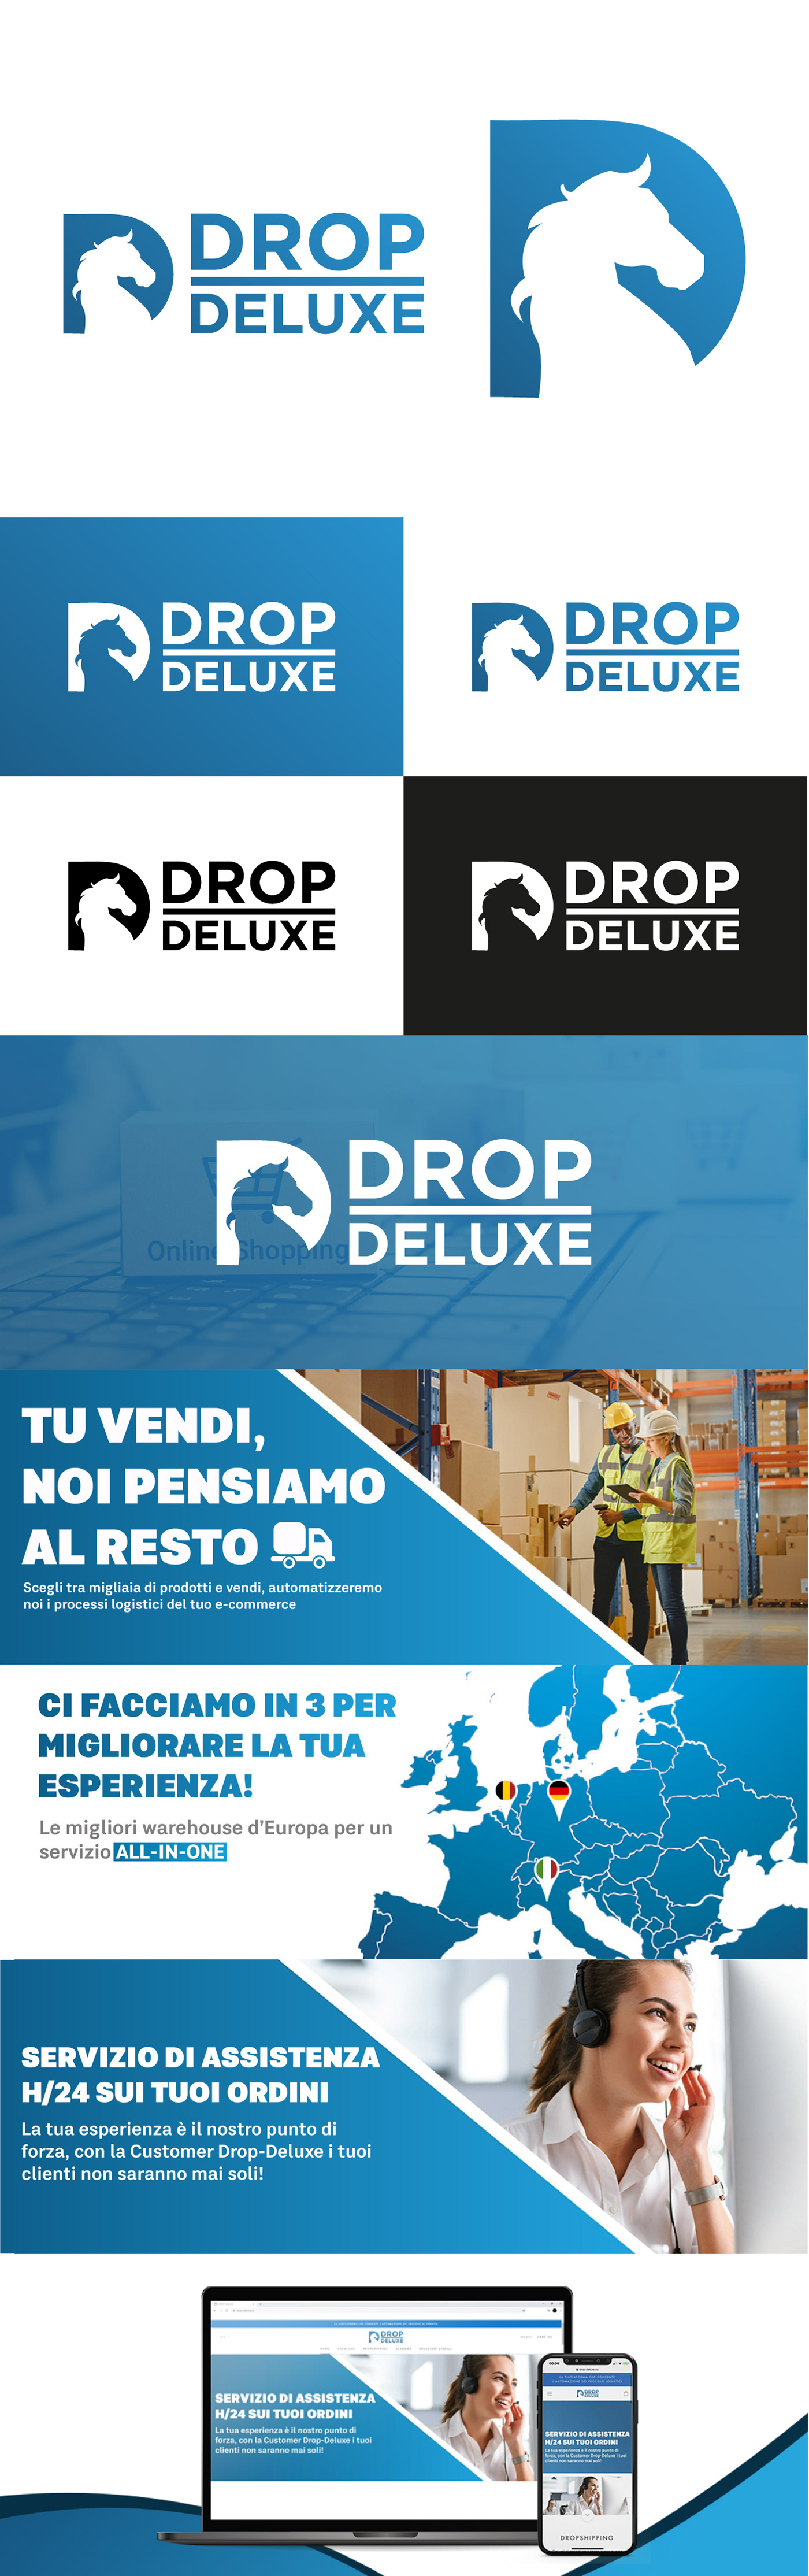 design dropdeluxe Ecommerce italiano